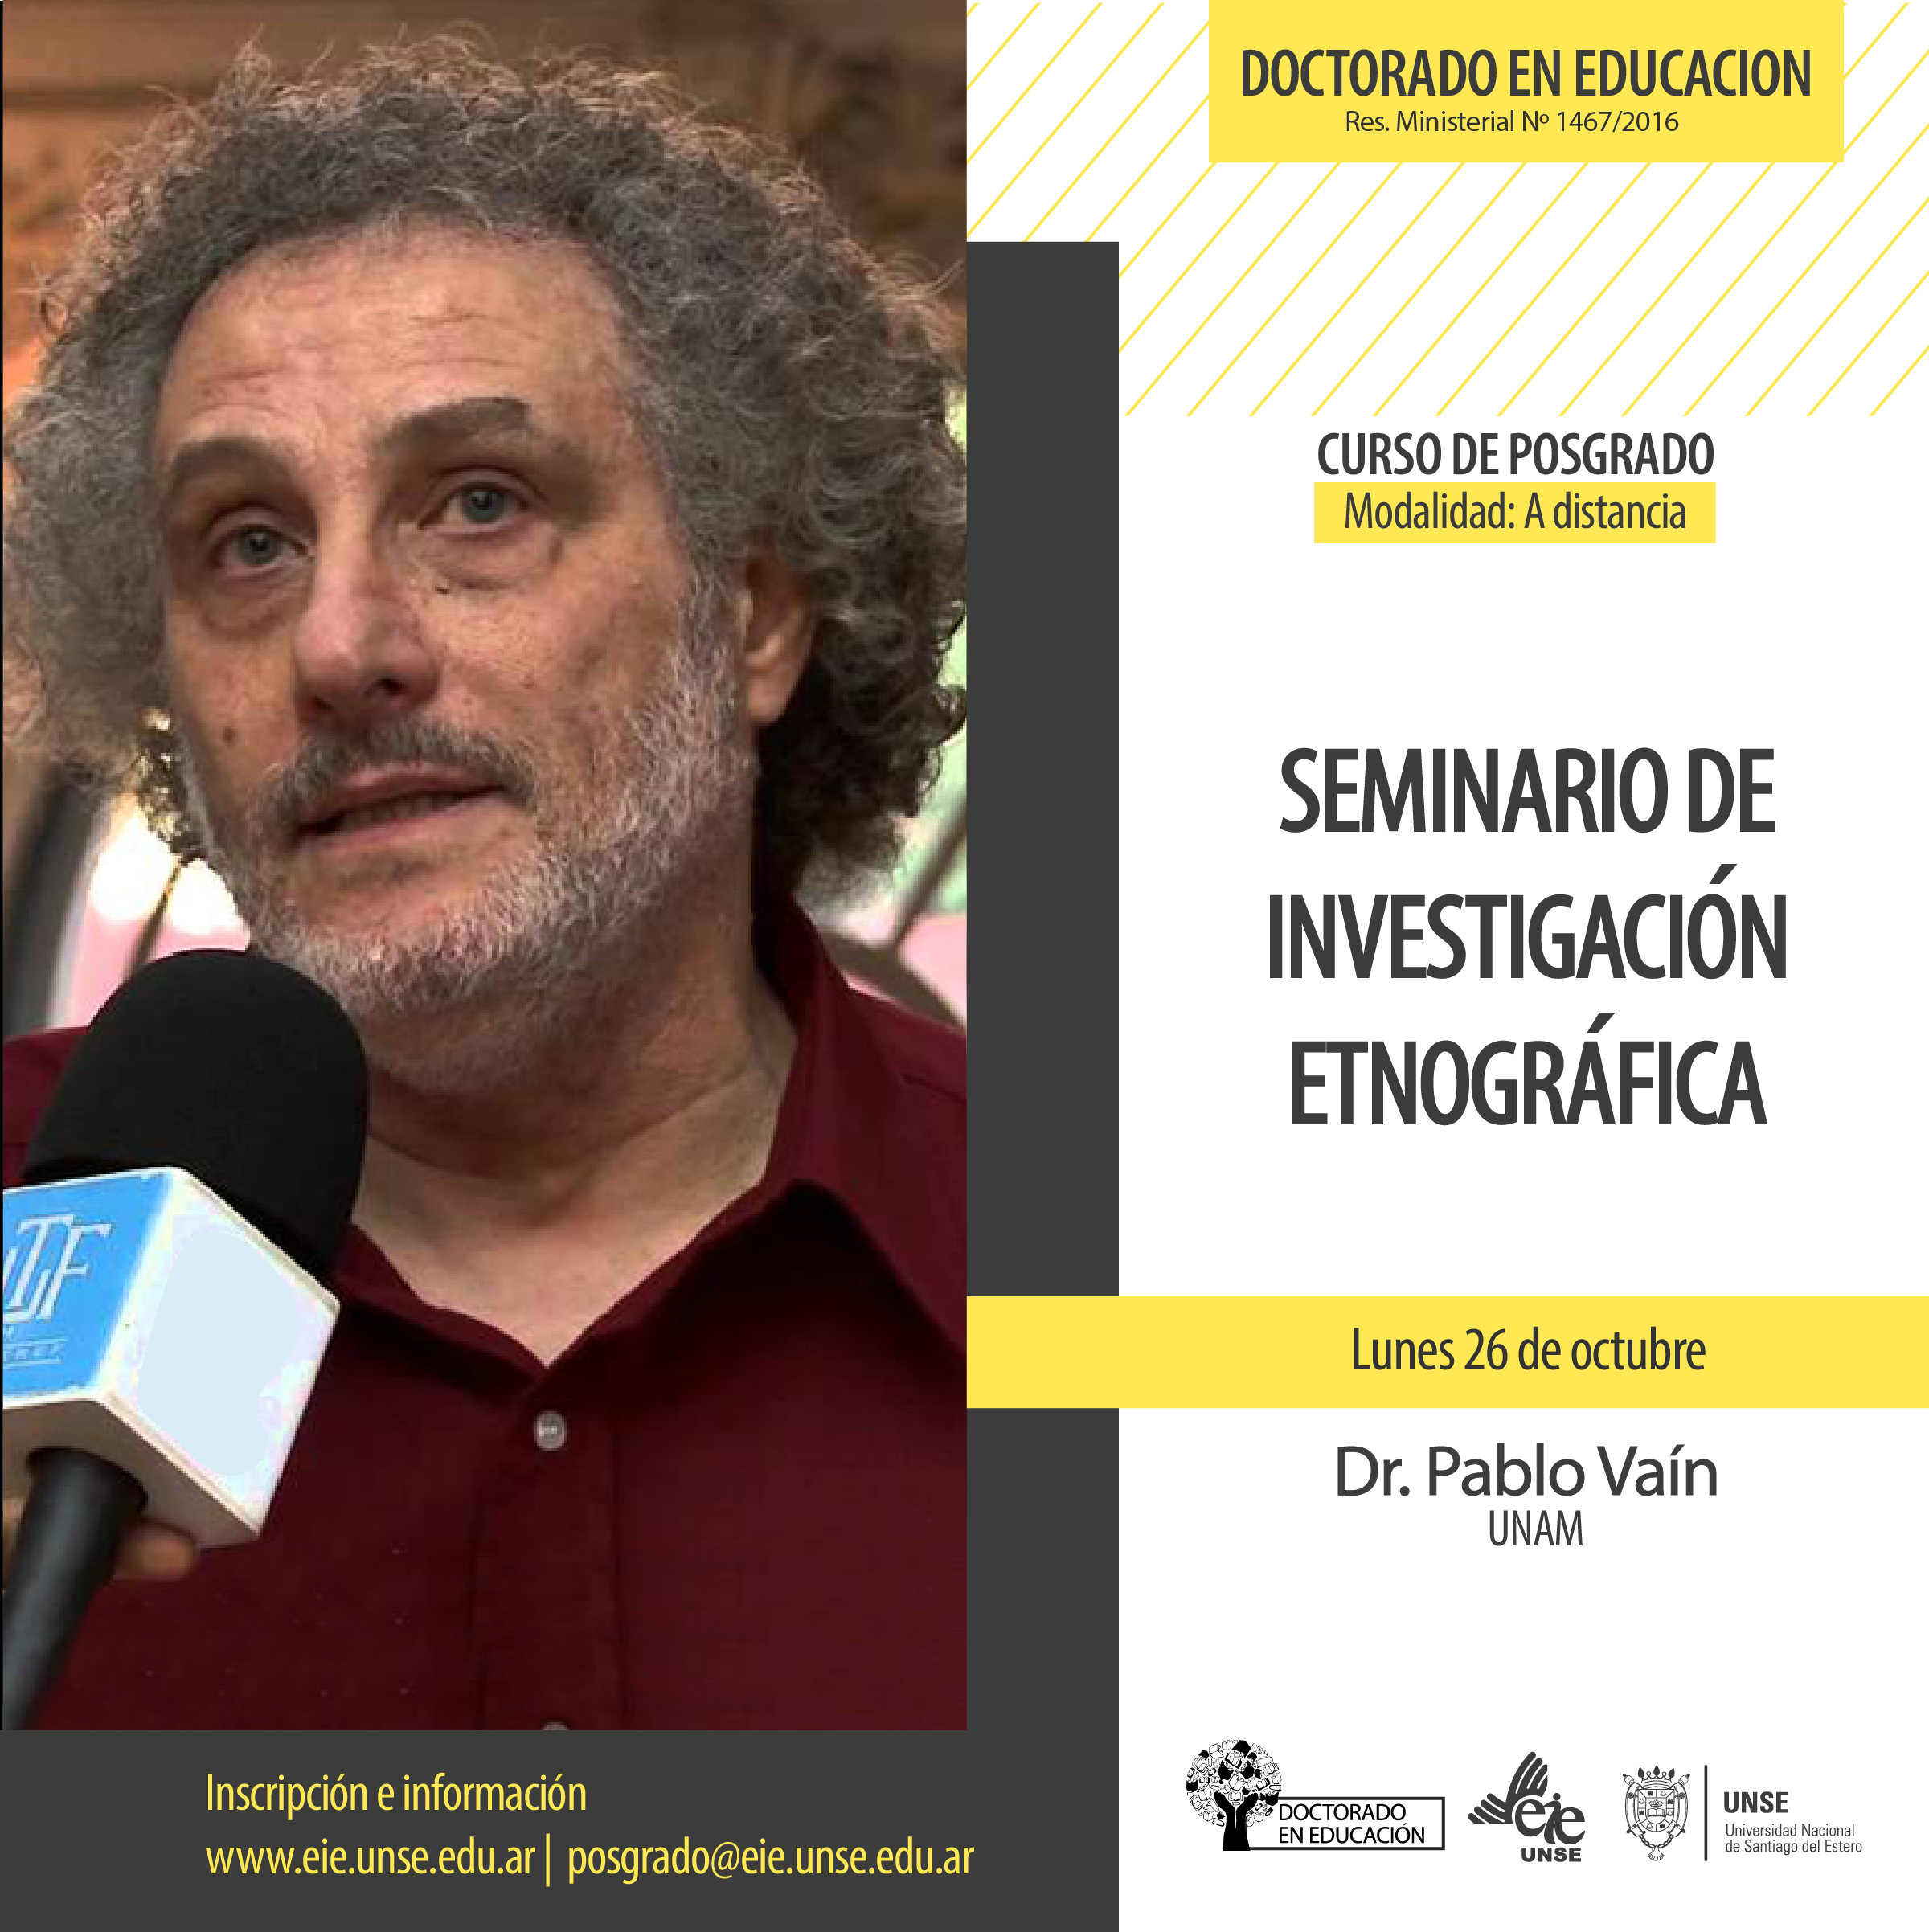 Invitamos al seminario de Investigación Etnográfica dictado por el Dr. Pablo Vaín